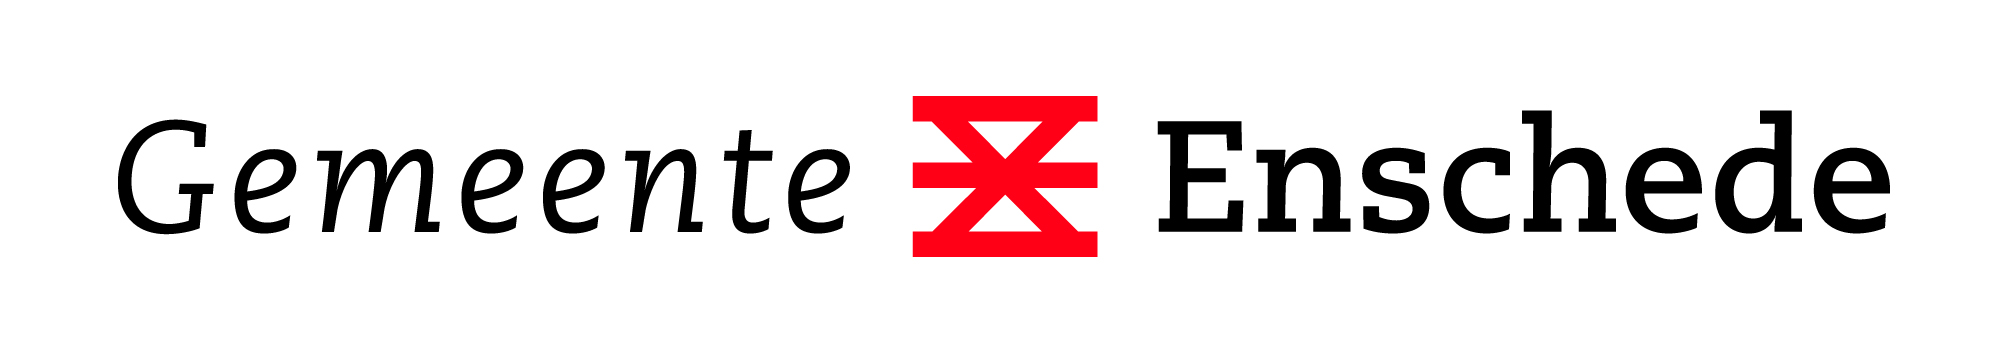 Logo Enschede